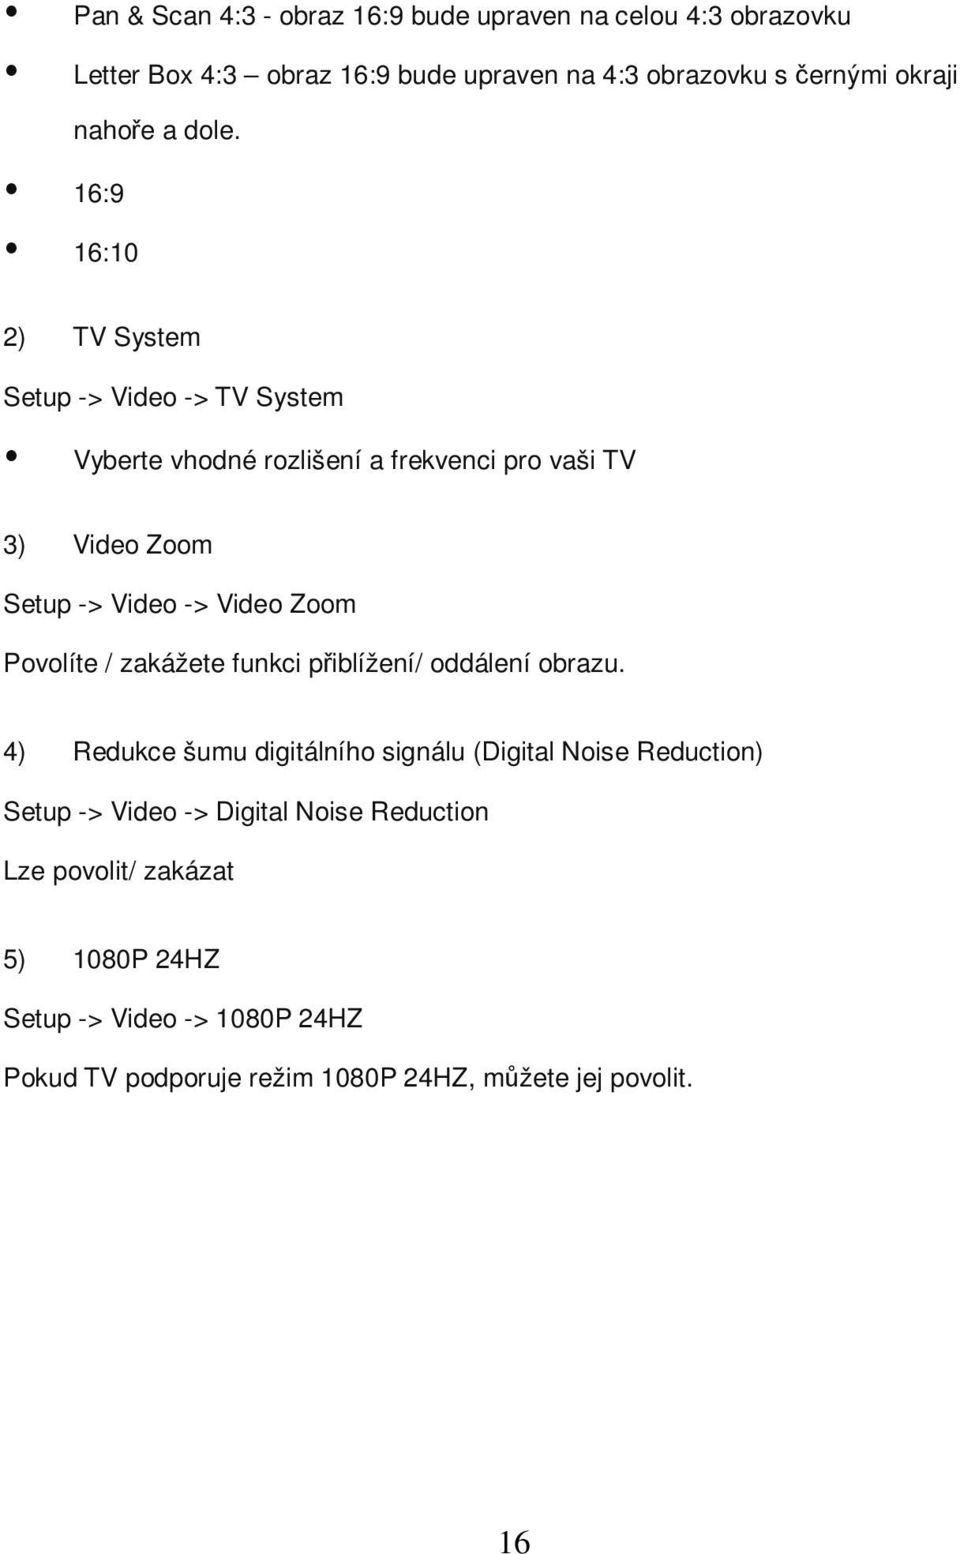 16:9 16:10 2) TV System Setup -> Video -> TV System Vyberte vhodné rozlišení a frekvenci pro vaši TV 3) Video Zoom Setup -> Video -> Video Zoom